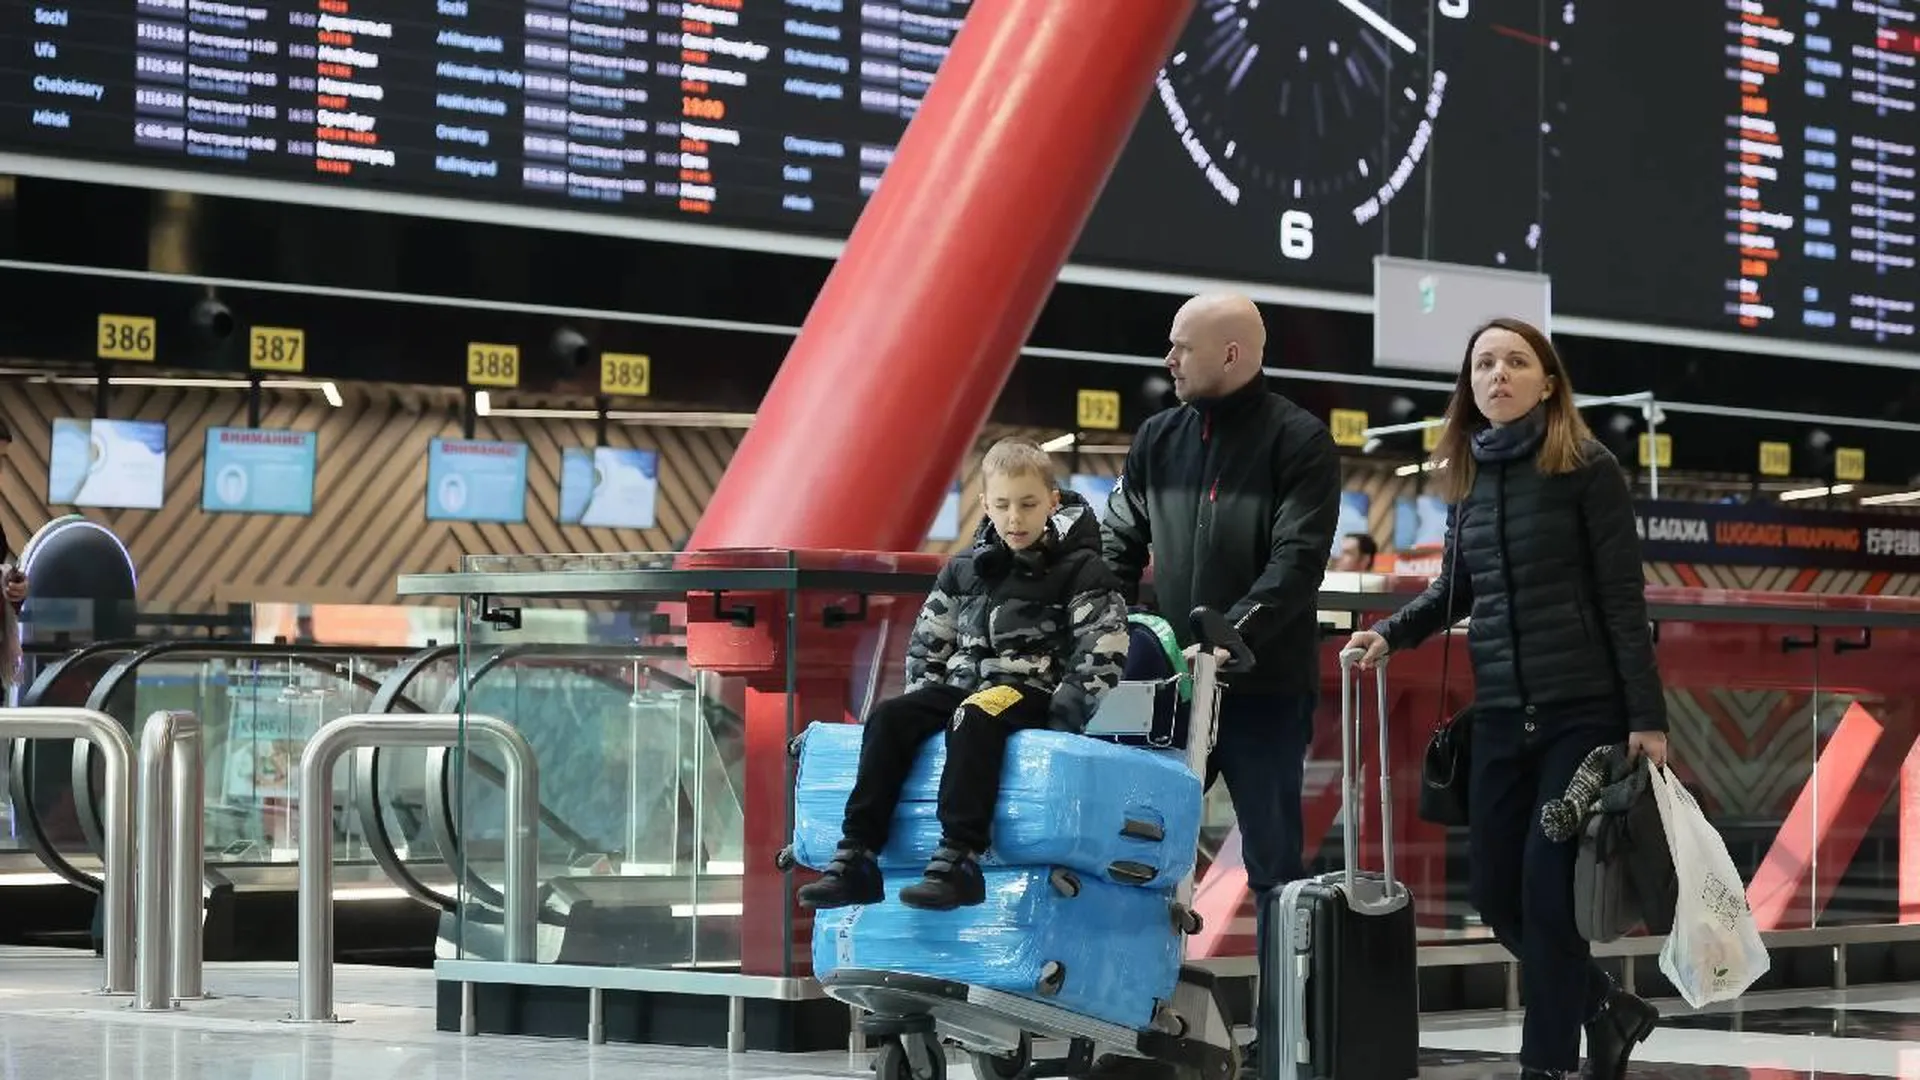 Прокуратура добилась адаптации здания новокузнецкого аэропорта для нужд инвалидов